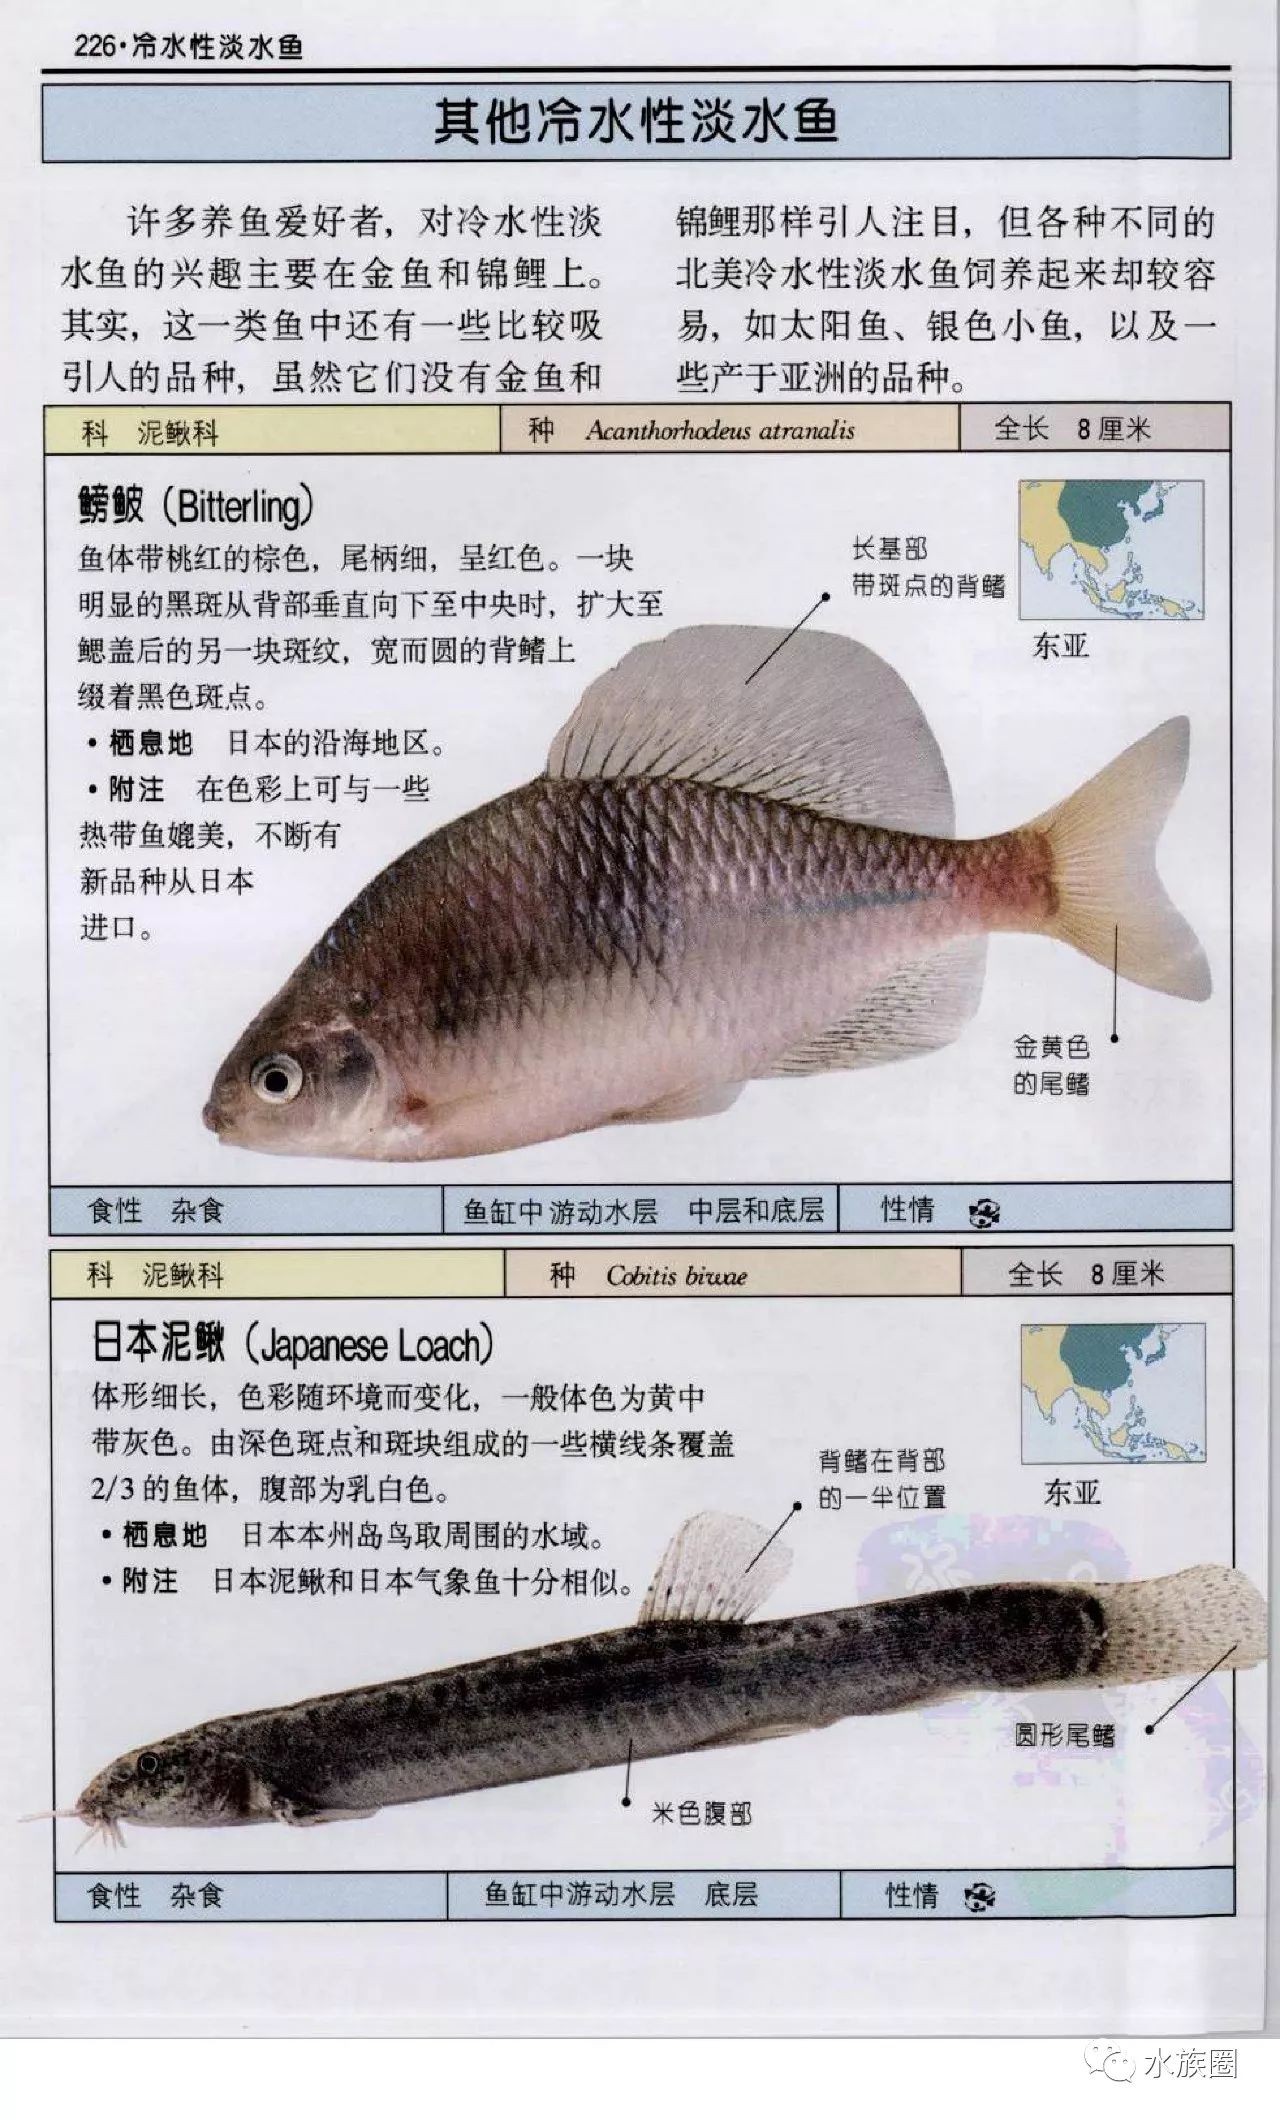 观赏鱼:全世界500多种观赏鱼的彩色图鉴 米尔斯【水族圈低调分享】